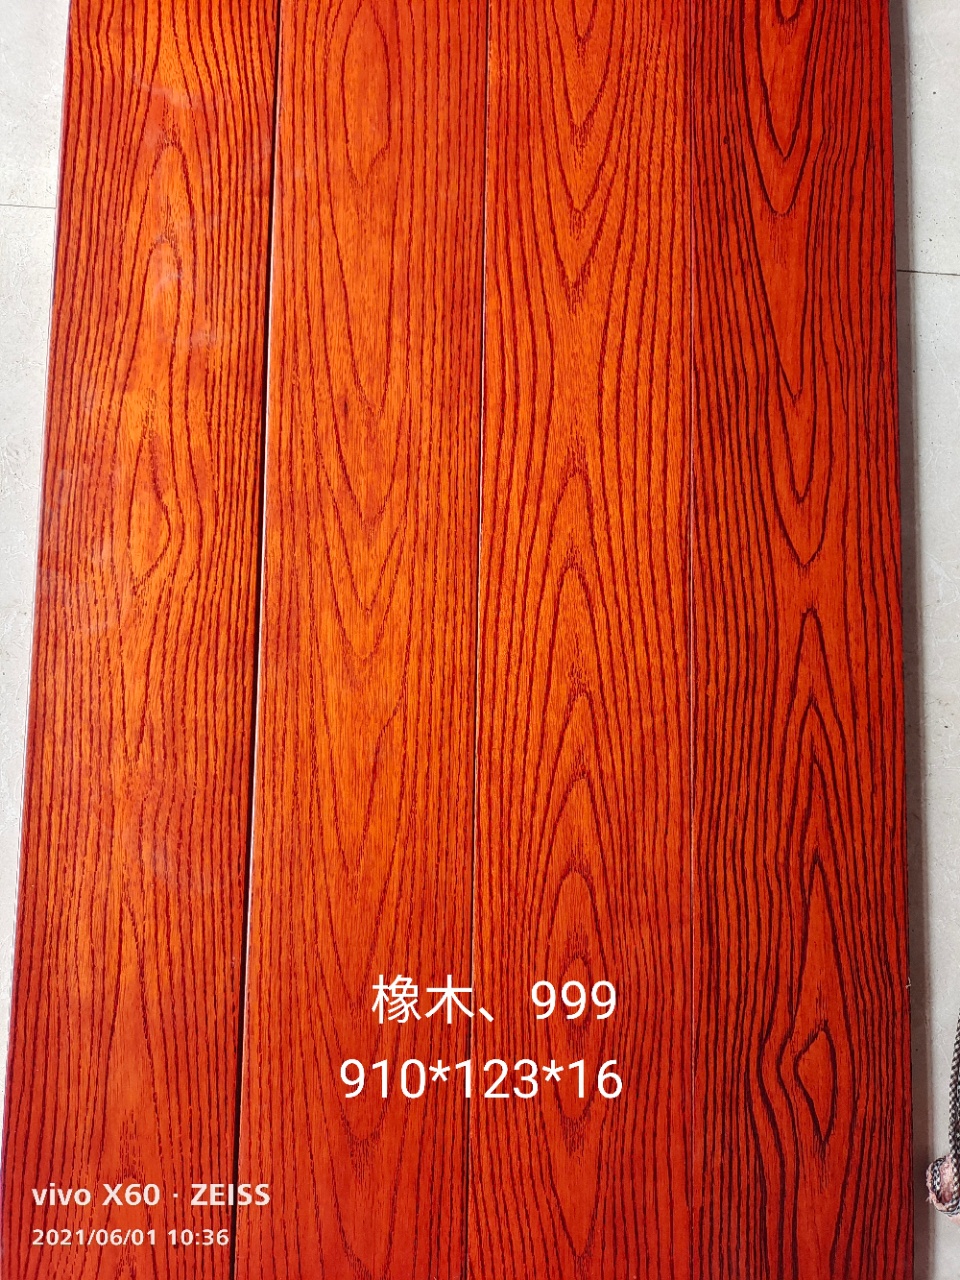 原木地板 木纹实木地板 实木地板厂家 欧式木地板 品瑞地板6